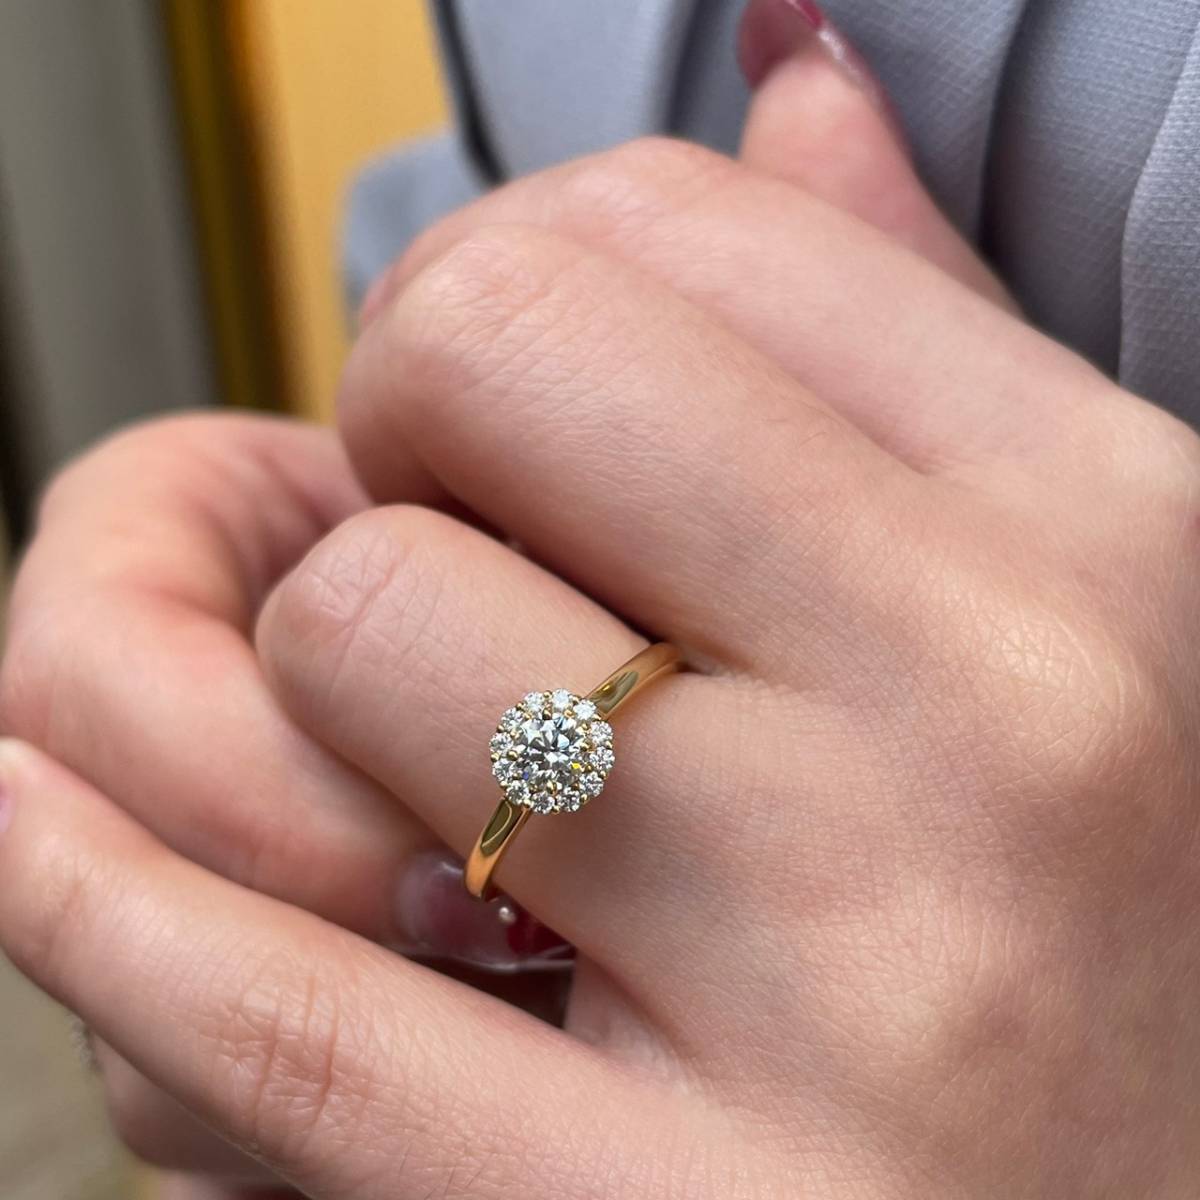 ヒマワリをモチーフとしたヘイローデザインの婚約指輪サンフラワーをプロポーズリングに